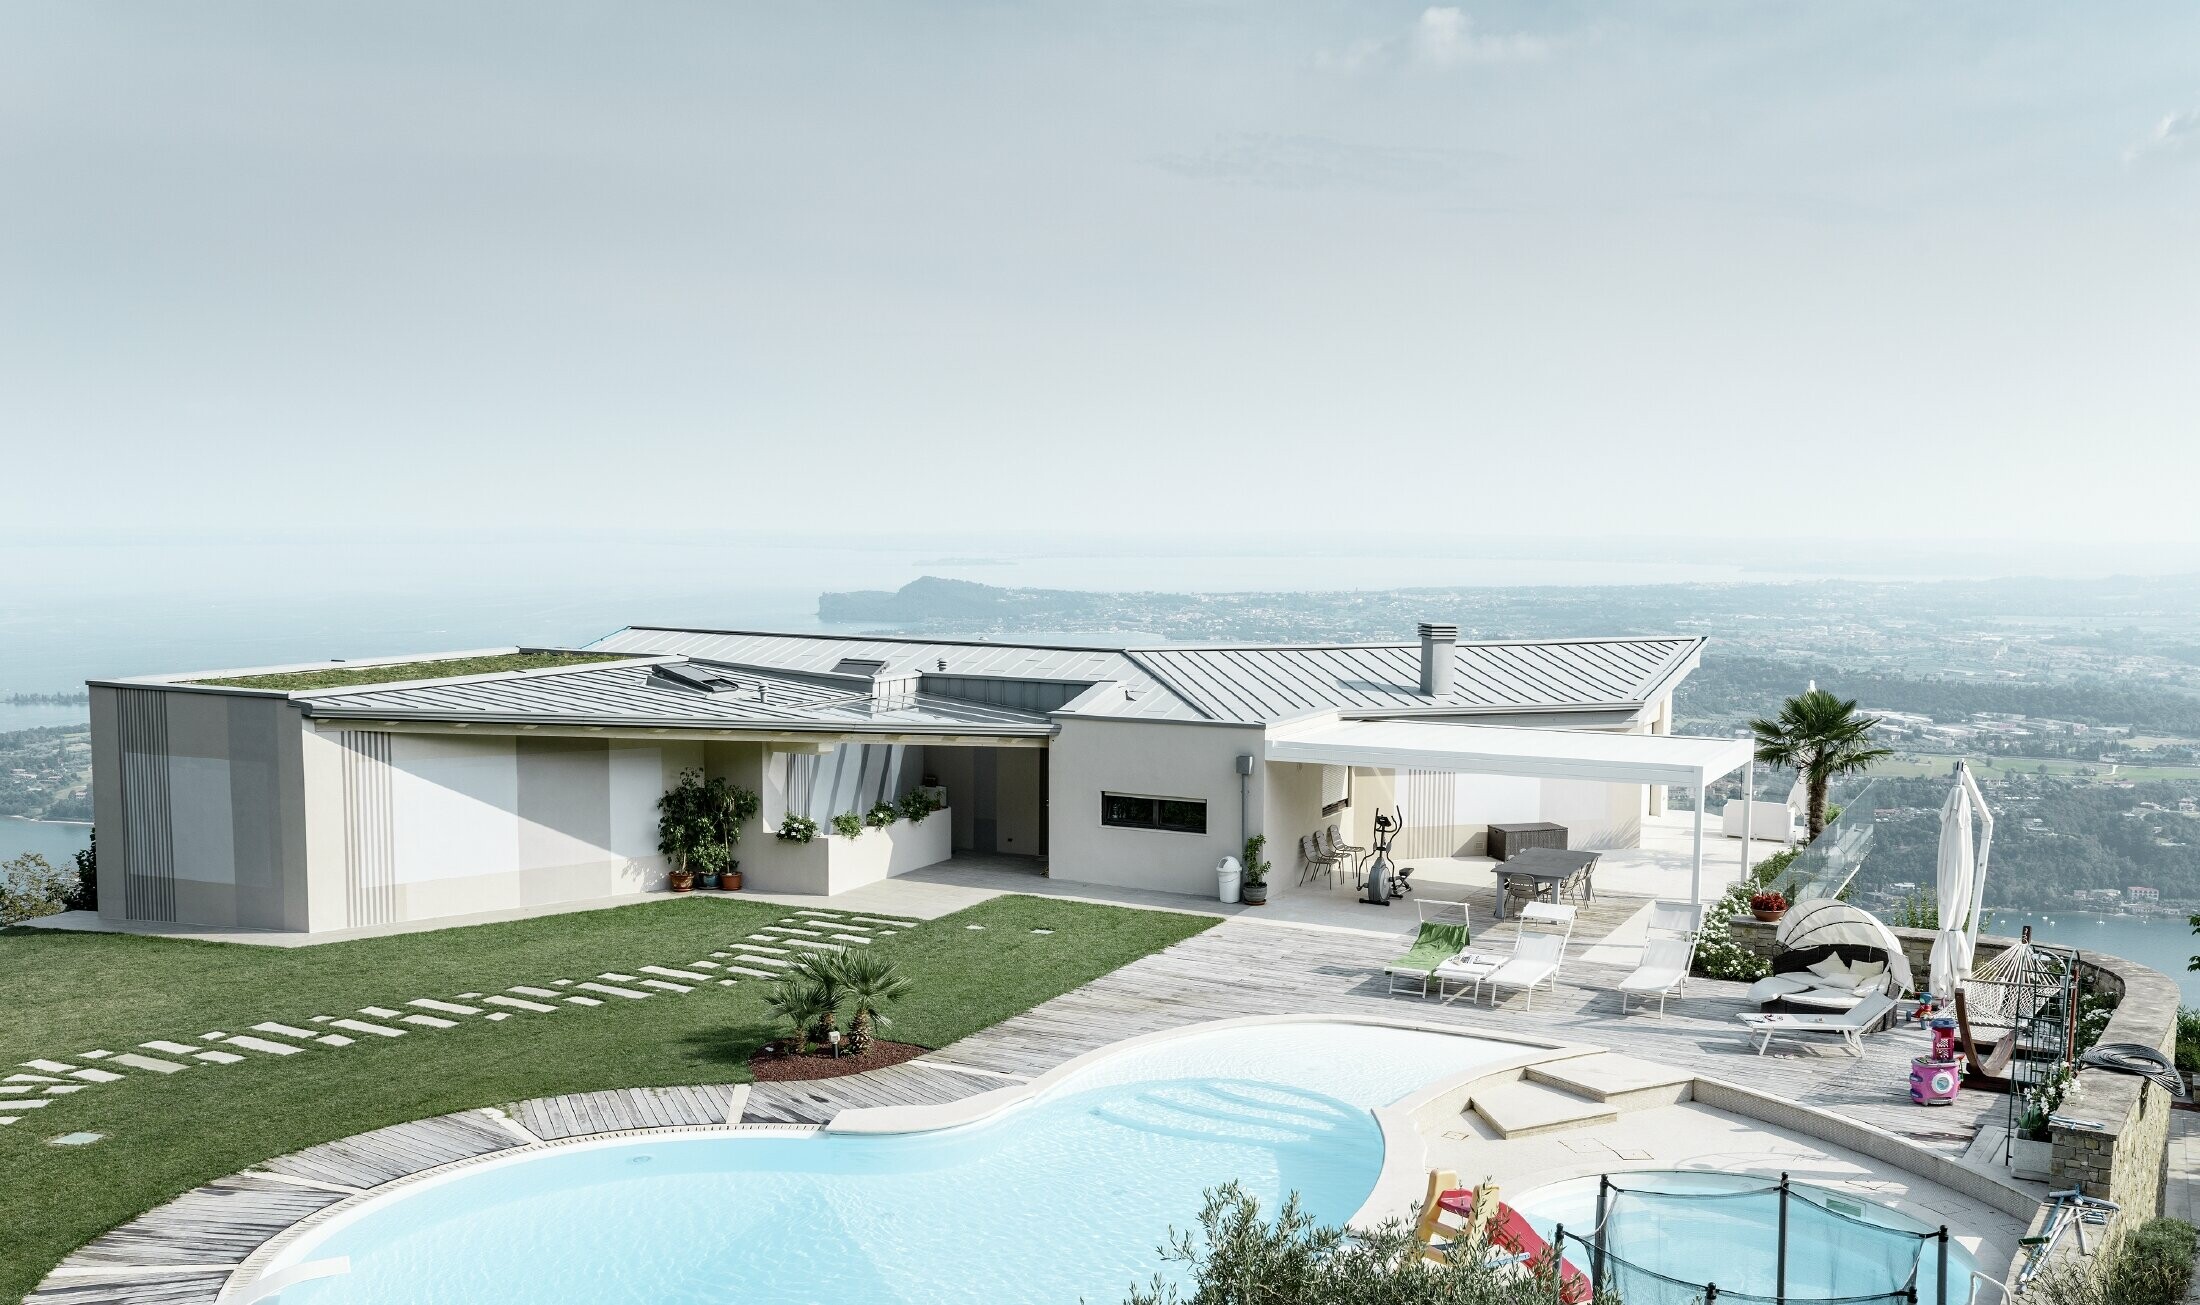 Propriété sur les hauteurs avec vue étendue sur les alentours, grande terrasse et piscine — Toiture PREFA à joints debout de couleur gris quartz